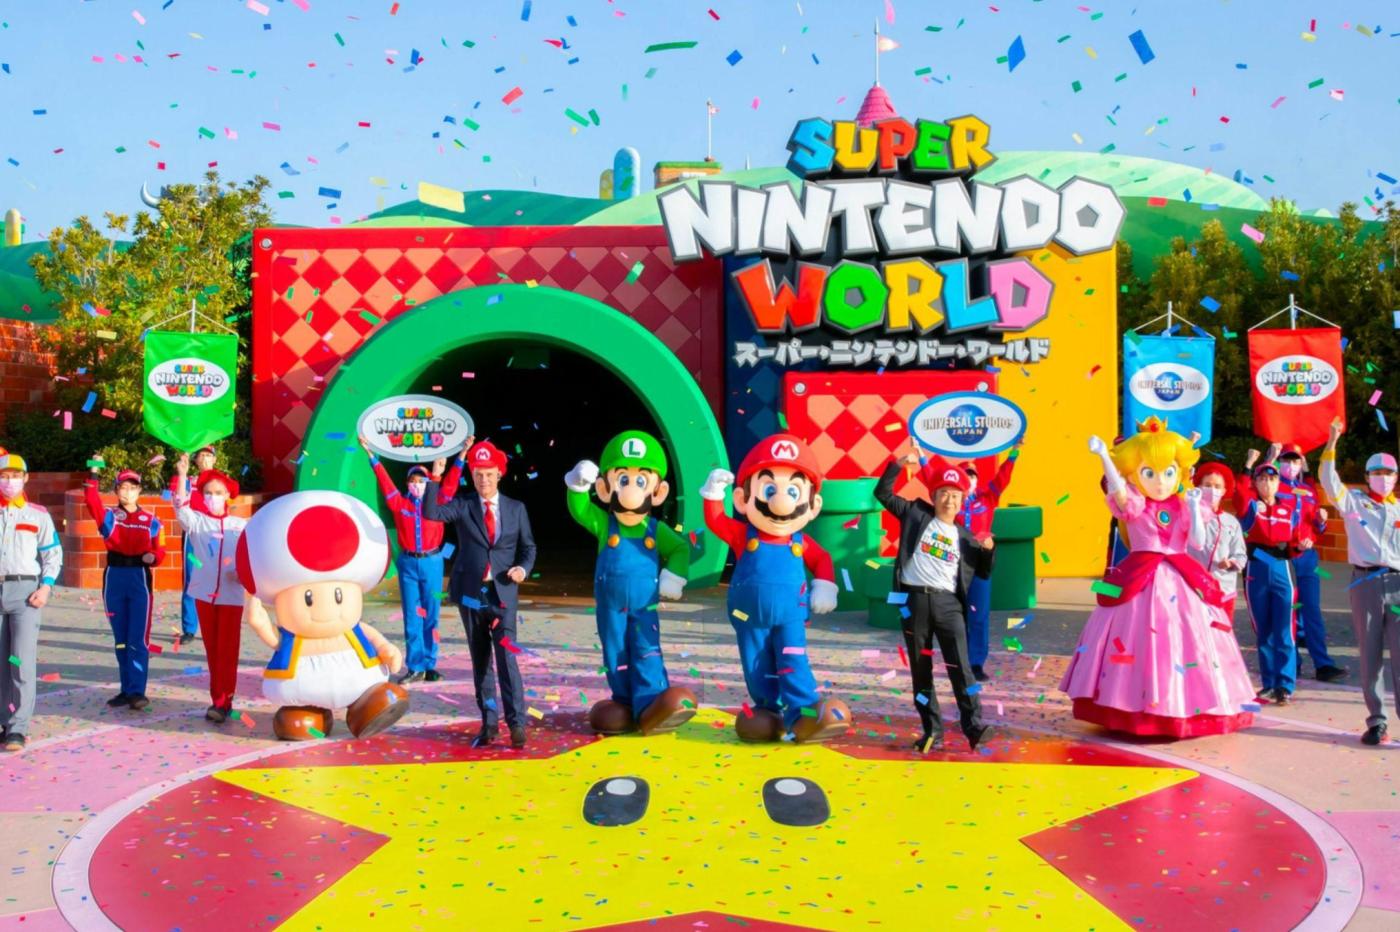 Image de l'ouverture de Super Nintendo World au Japon